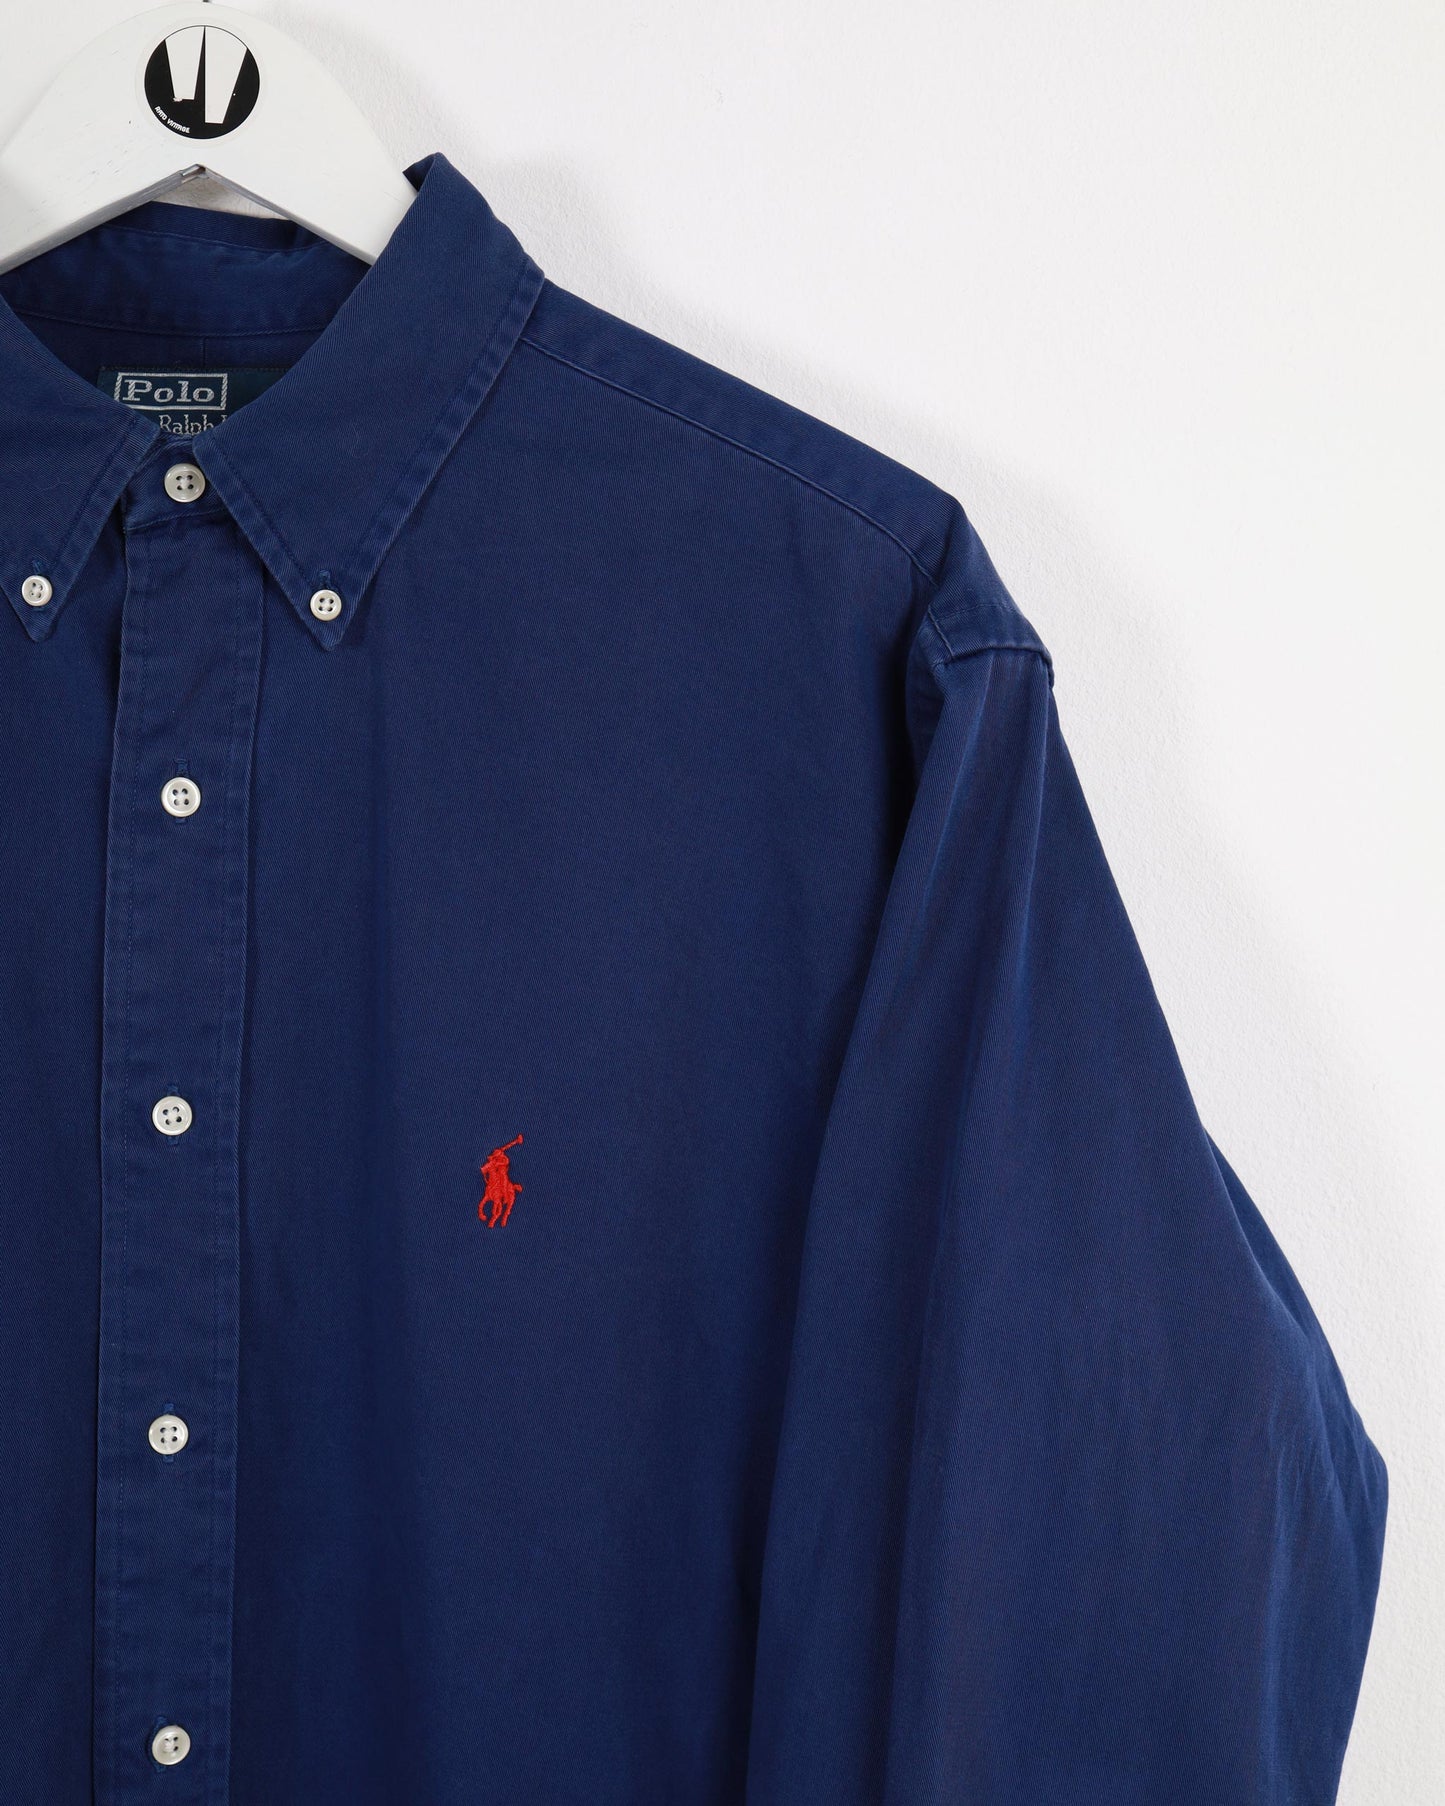 Polo Ralph Lauren Custom Fit Long Sleeve Shirt Blue L